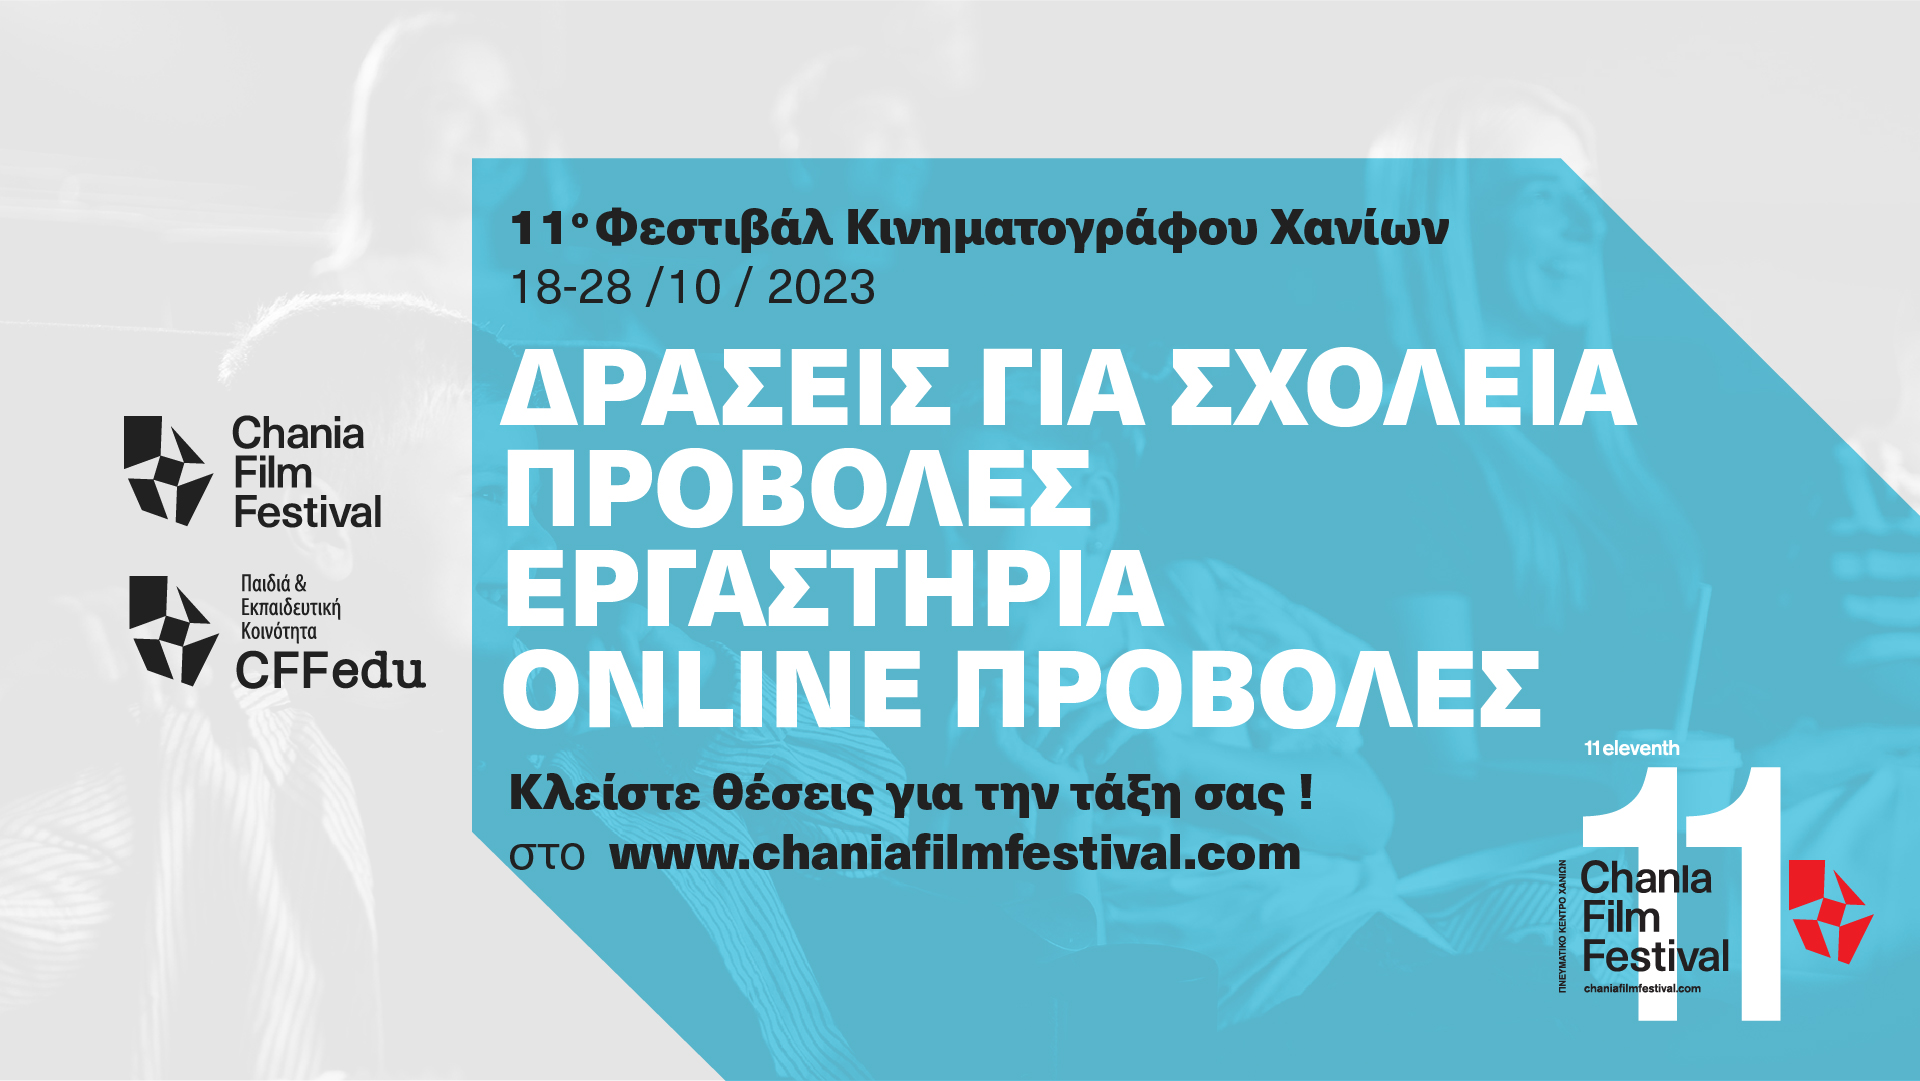 ΔΩΡΕΑΝ Συμμετοχή  σχολείων και εκπαιδευτικών στις δράσεις του 11ου Φεστιβάλ Κινηματογράφου Χανίων / Chania Film Festival (CFF) που θα πραγματοποιηθούν από τις 18 Οκτωβρίου έως και τις 28 Οκτωβρίου 2023 , στο Πνευματικό Κέντρο Χανίων και online